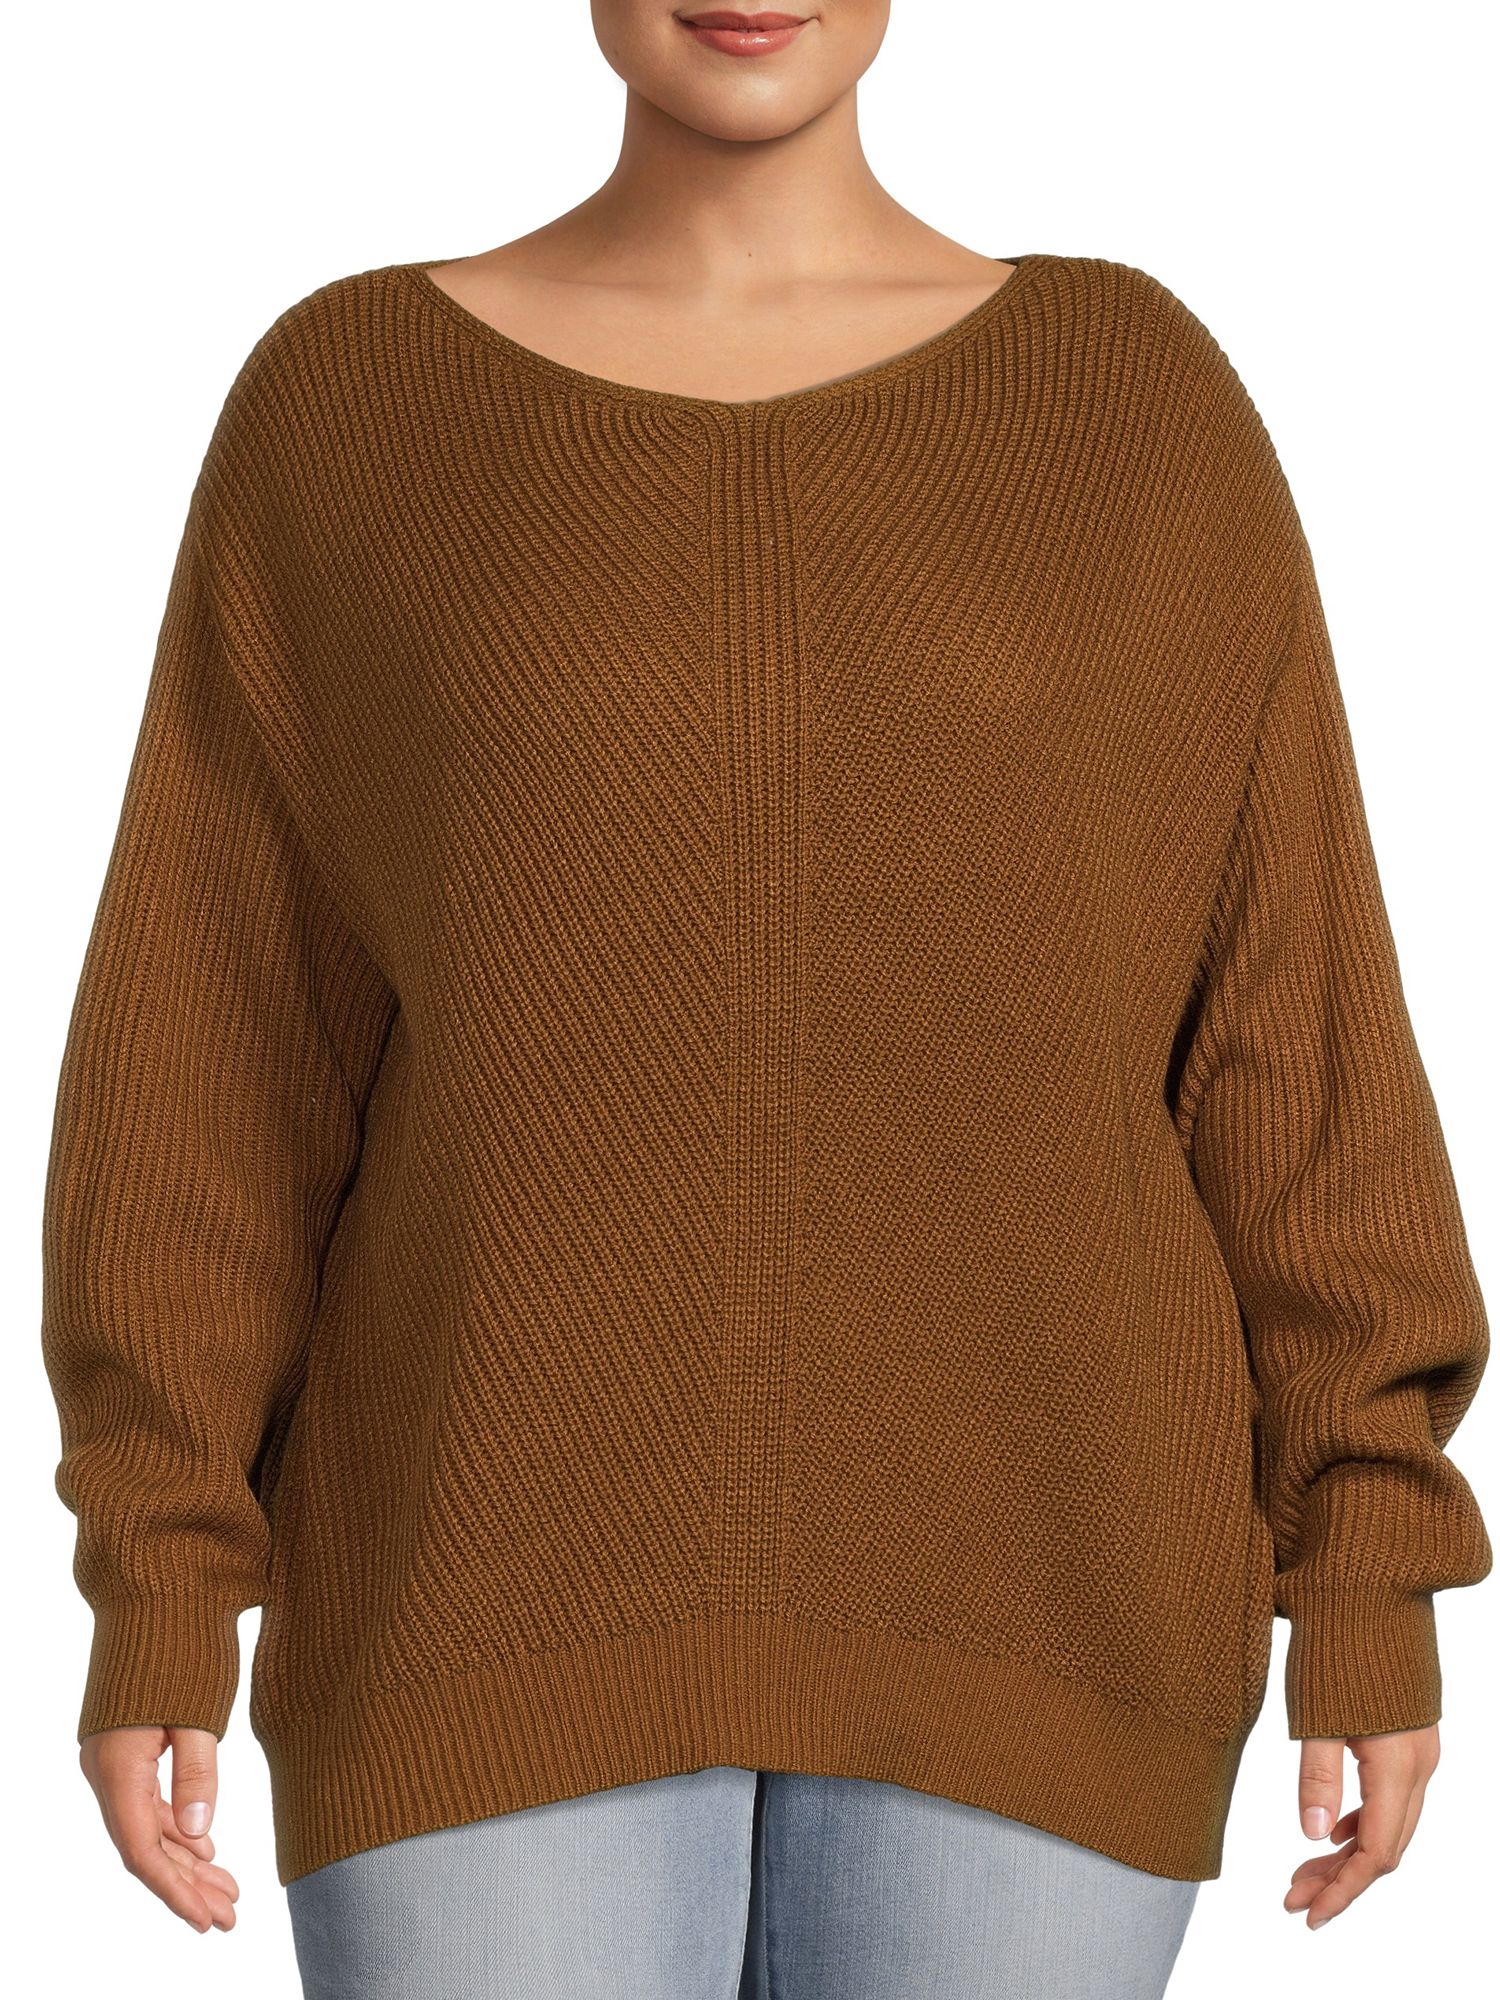 Terra & Sky Women's Plus Size Boatneck Sweater - Walmart.com | Walmart (US)